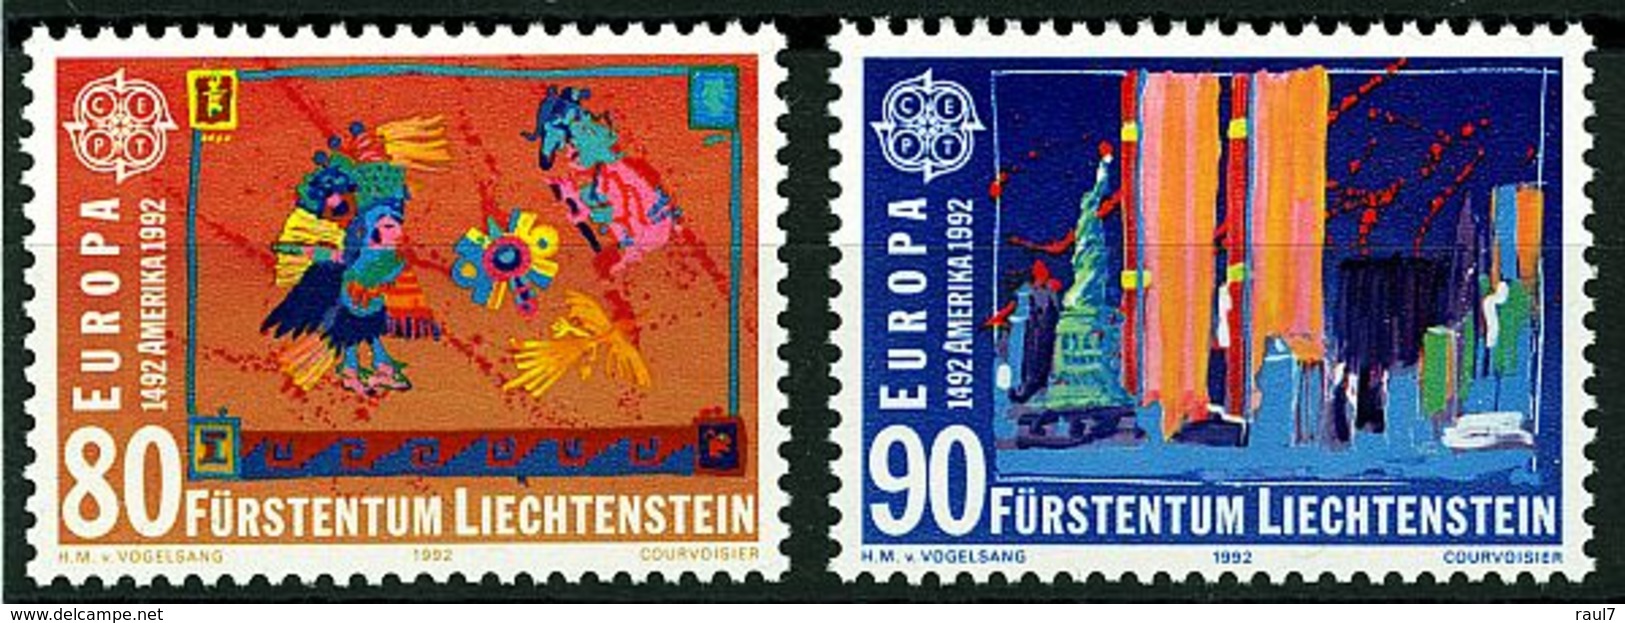 EUROPA-CEPT 1992 - Liechtenstein - 2 Val Neufs // Mnh // Ch. Colomb - 1992